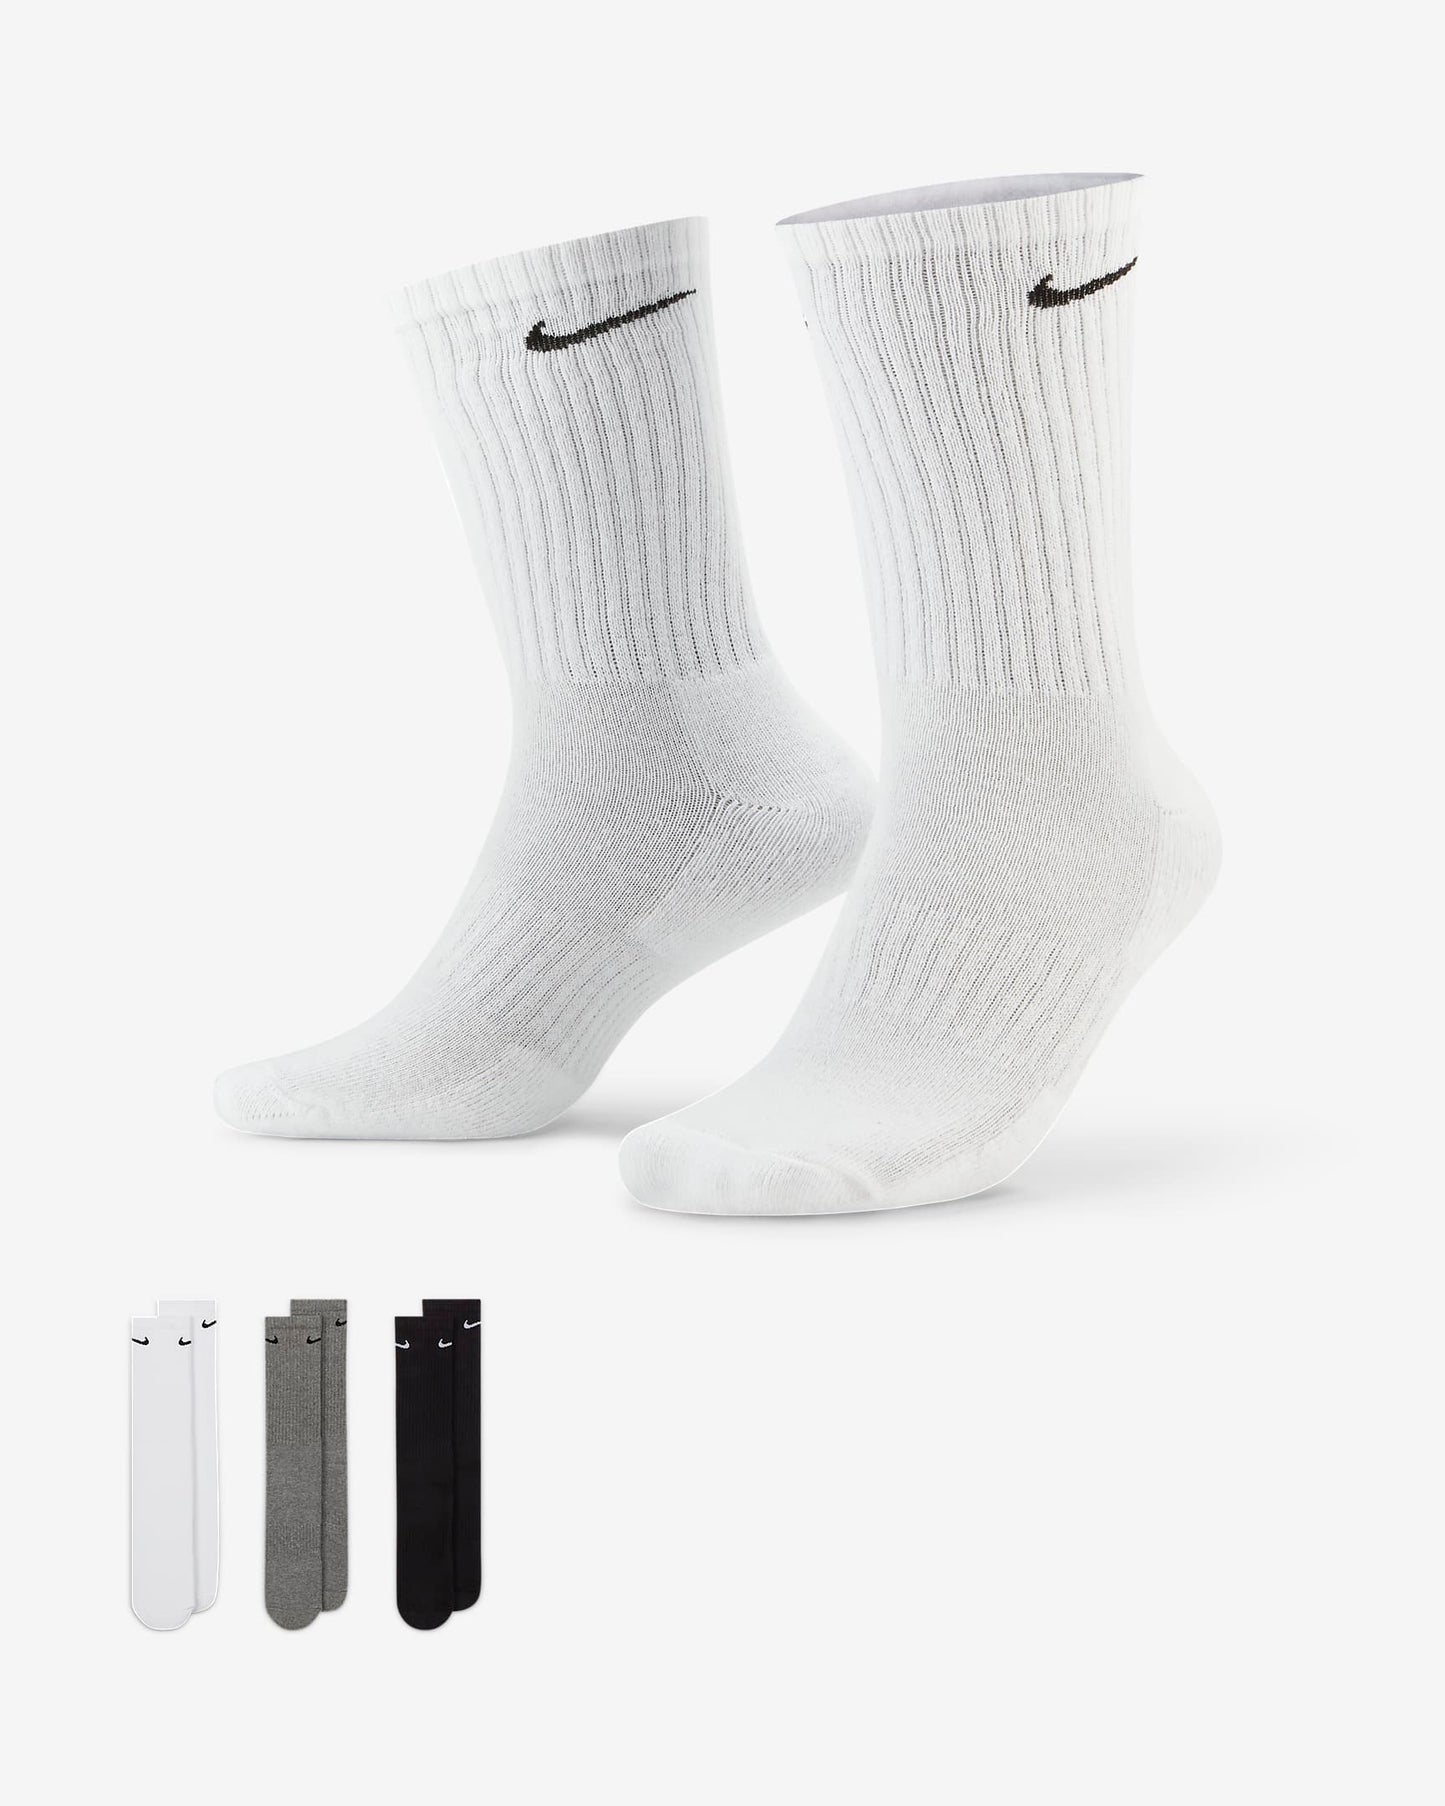 Calcetines de entrenamiento Nike Everyday Cushioned negro, blanco y gris (3 pares)